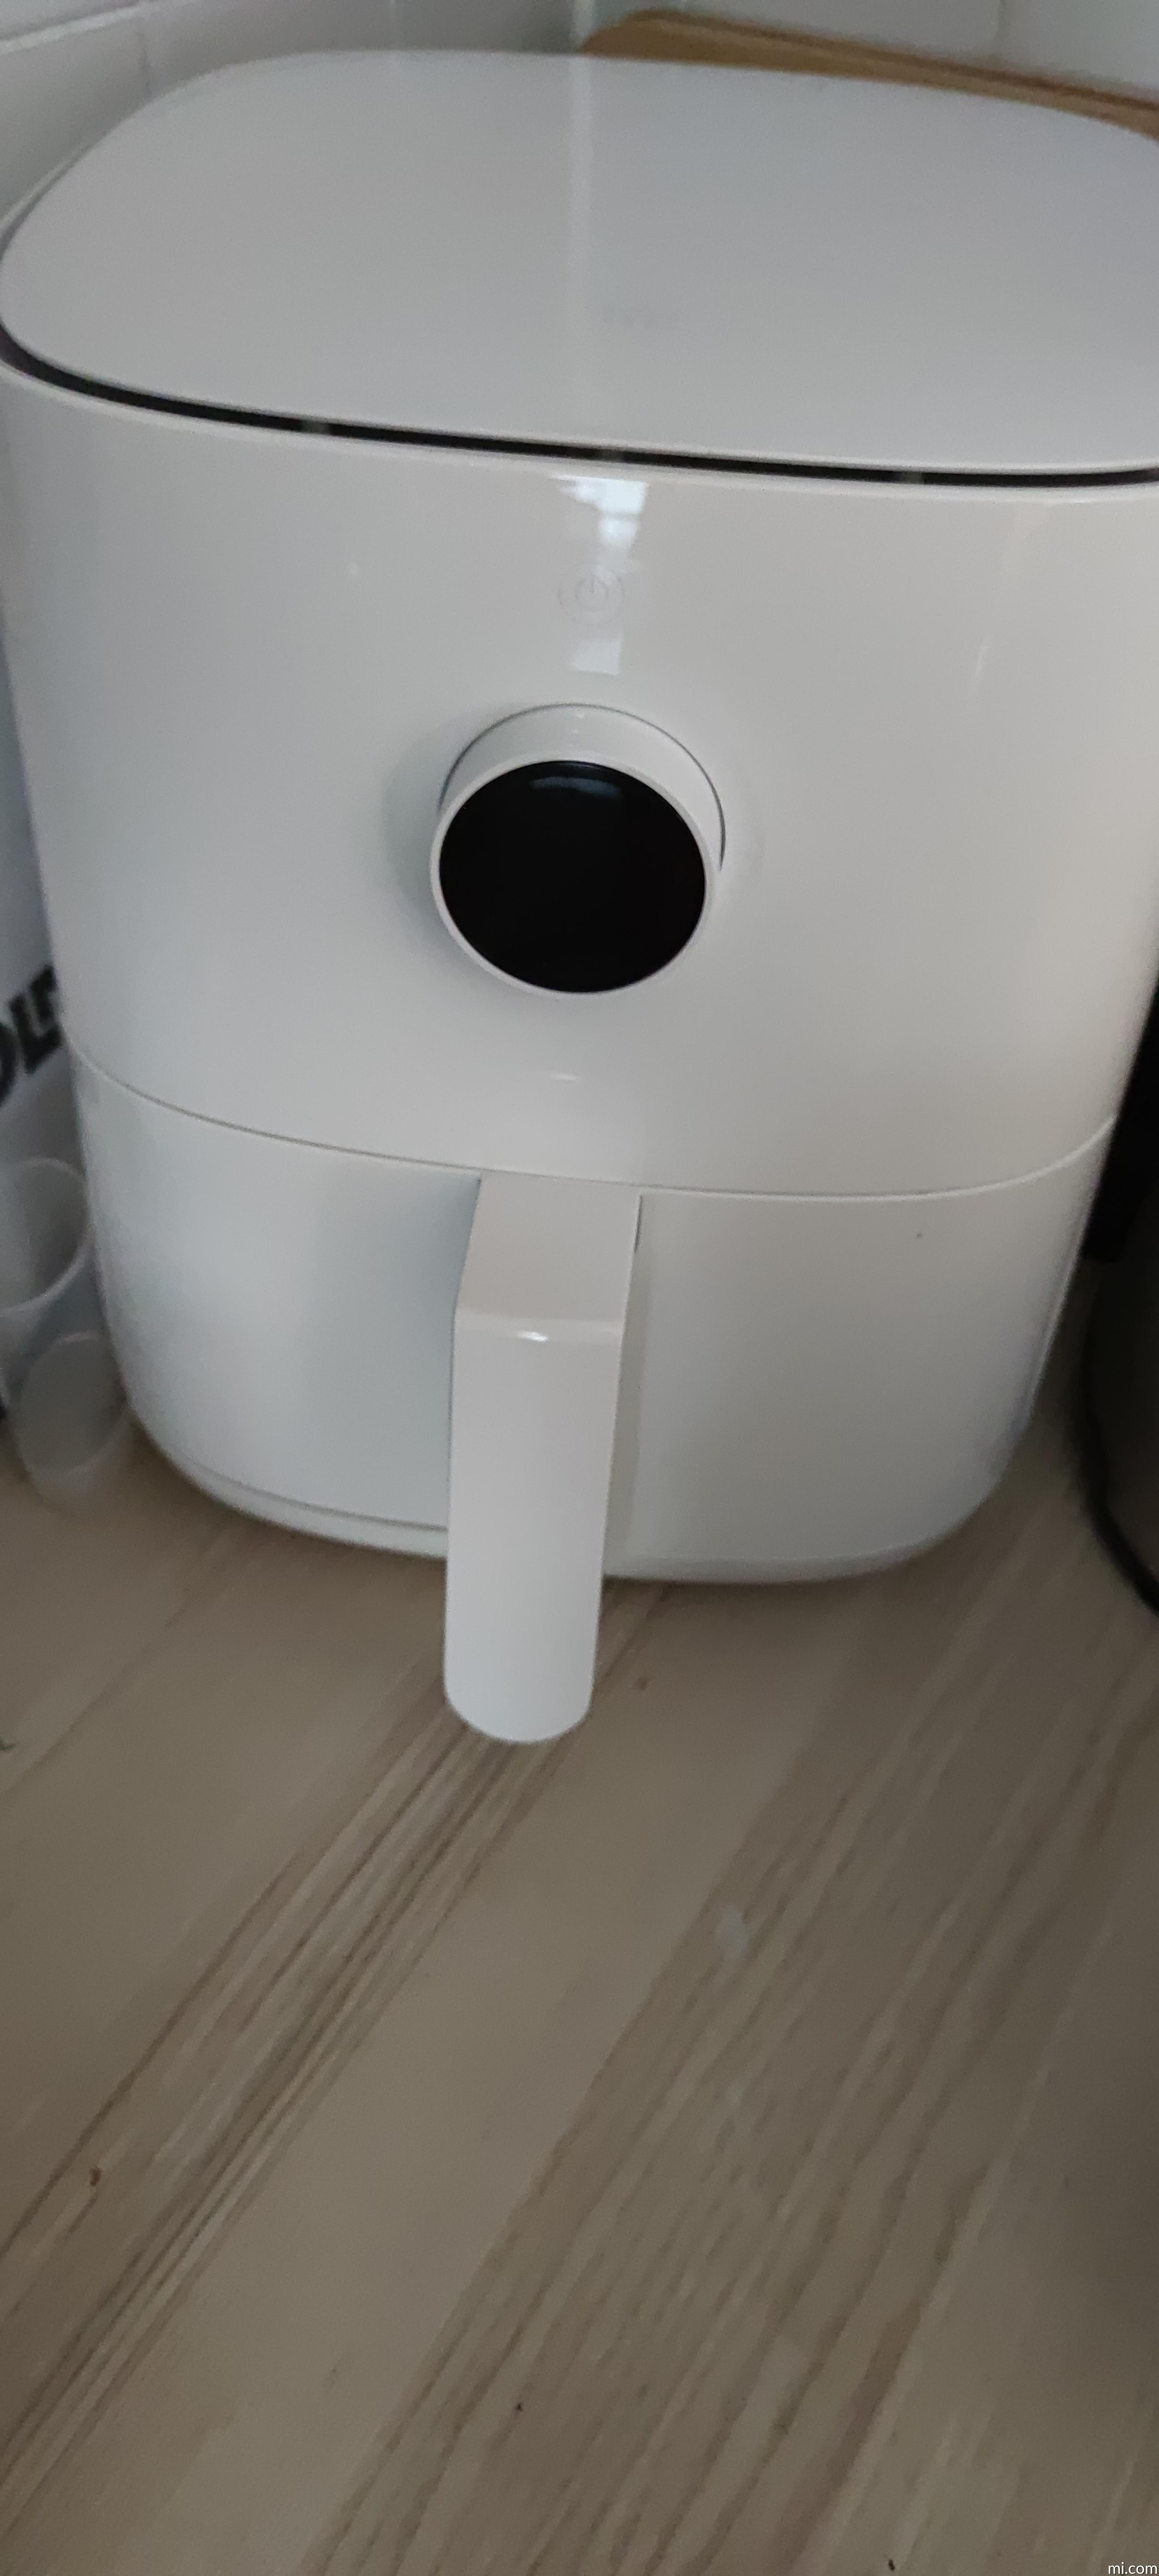 | Mi Deutschland 3.5L Fryer Smart Air Xiaomi